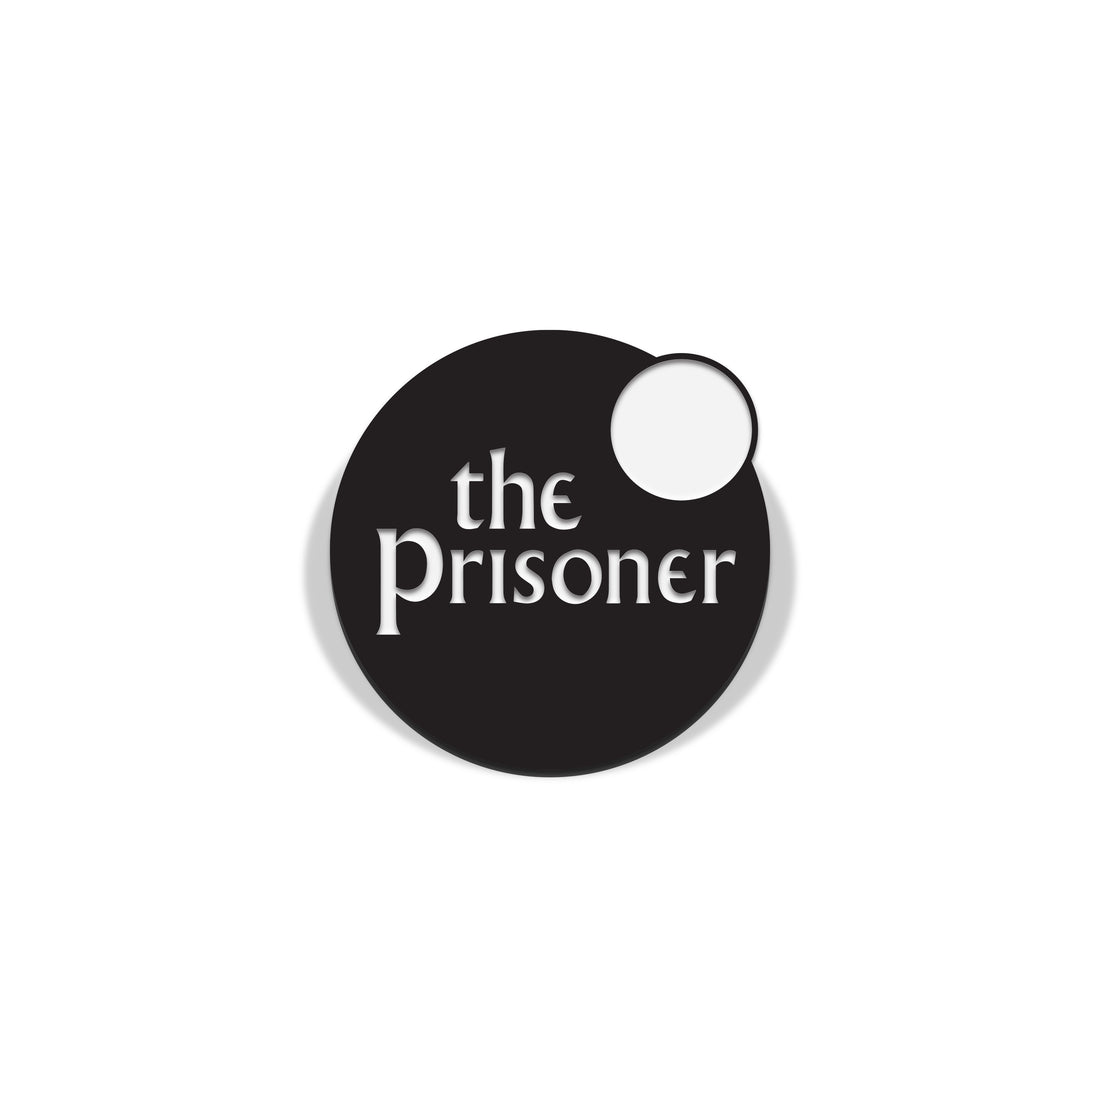 The Prisoner Limited Edition Enamel Pin Badge Set Official Licensed Florey Vice Press Logo